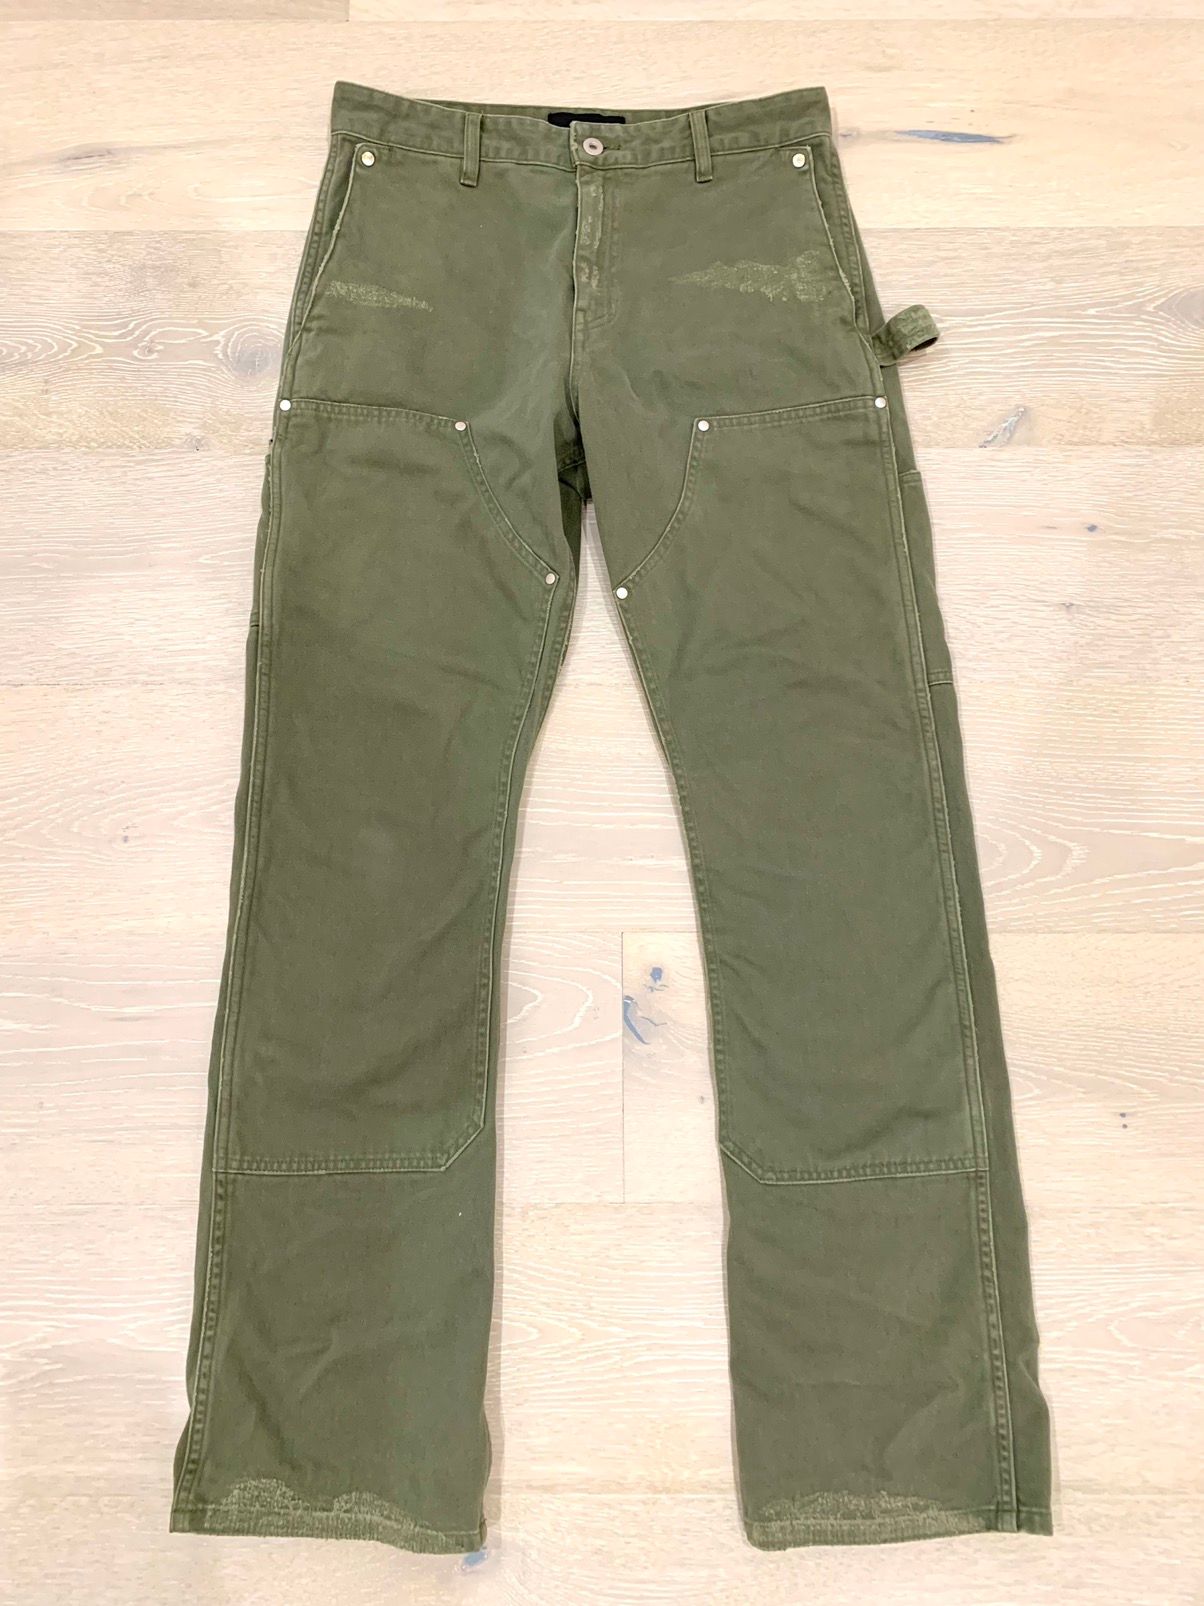 Vuja De Vuja Dé 004 Mori Trousers Double Knee Olive Pants Worker Size US 32 / EU 48 - 1 Preview